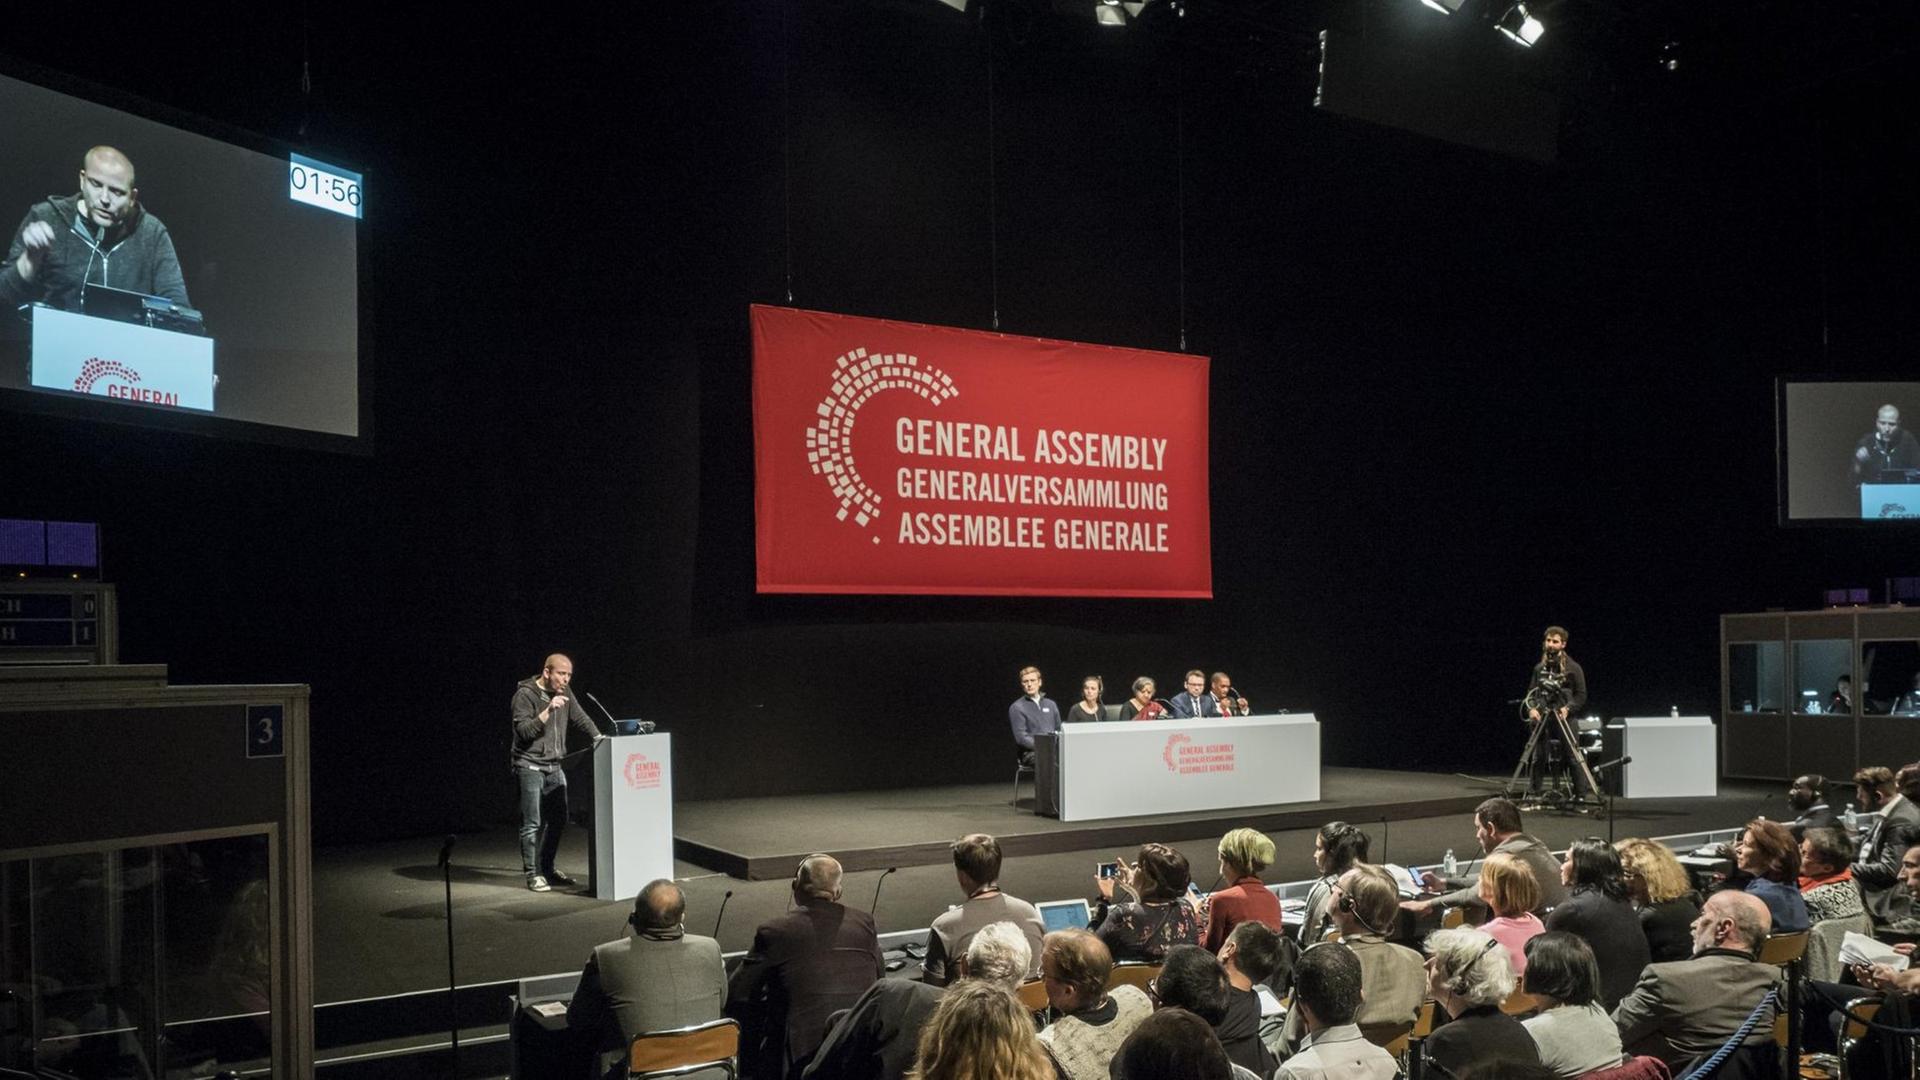 Szene aus dem Stück "General Assembly" von Milo Rau in der Schaubühne in Berlin.